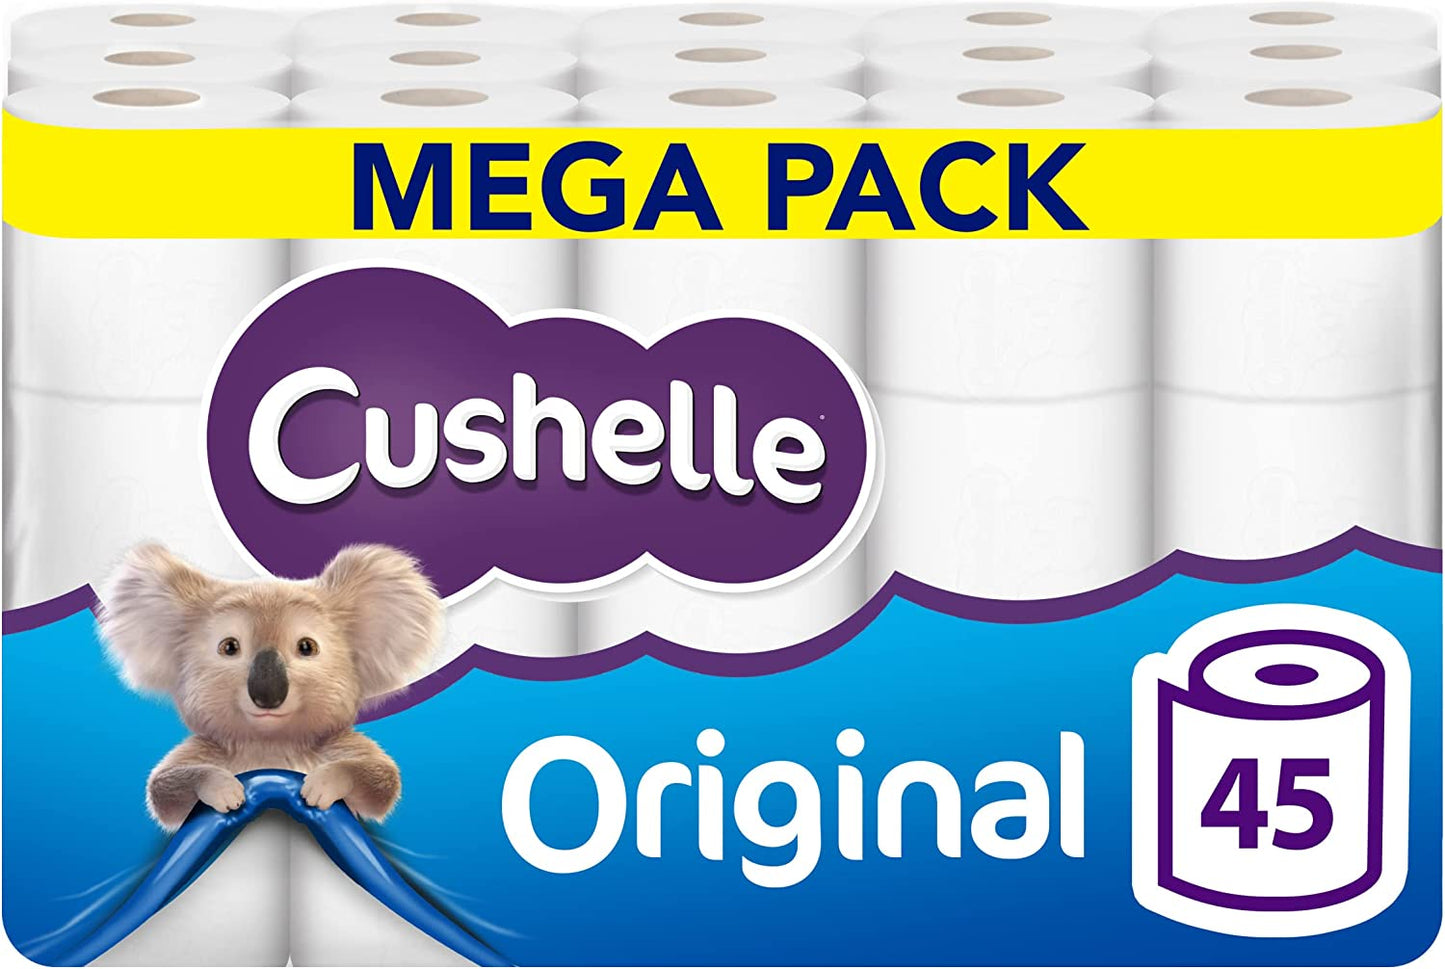 Cushelle Original Toilet Roll 9 Pack